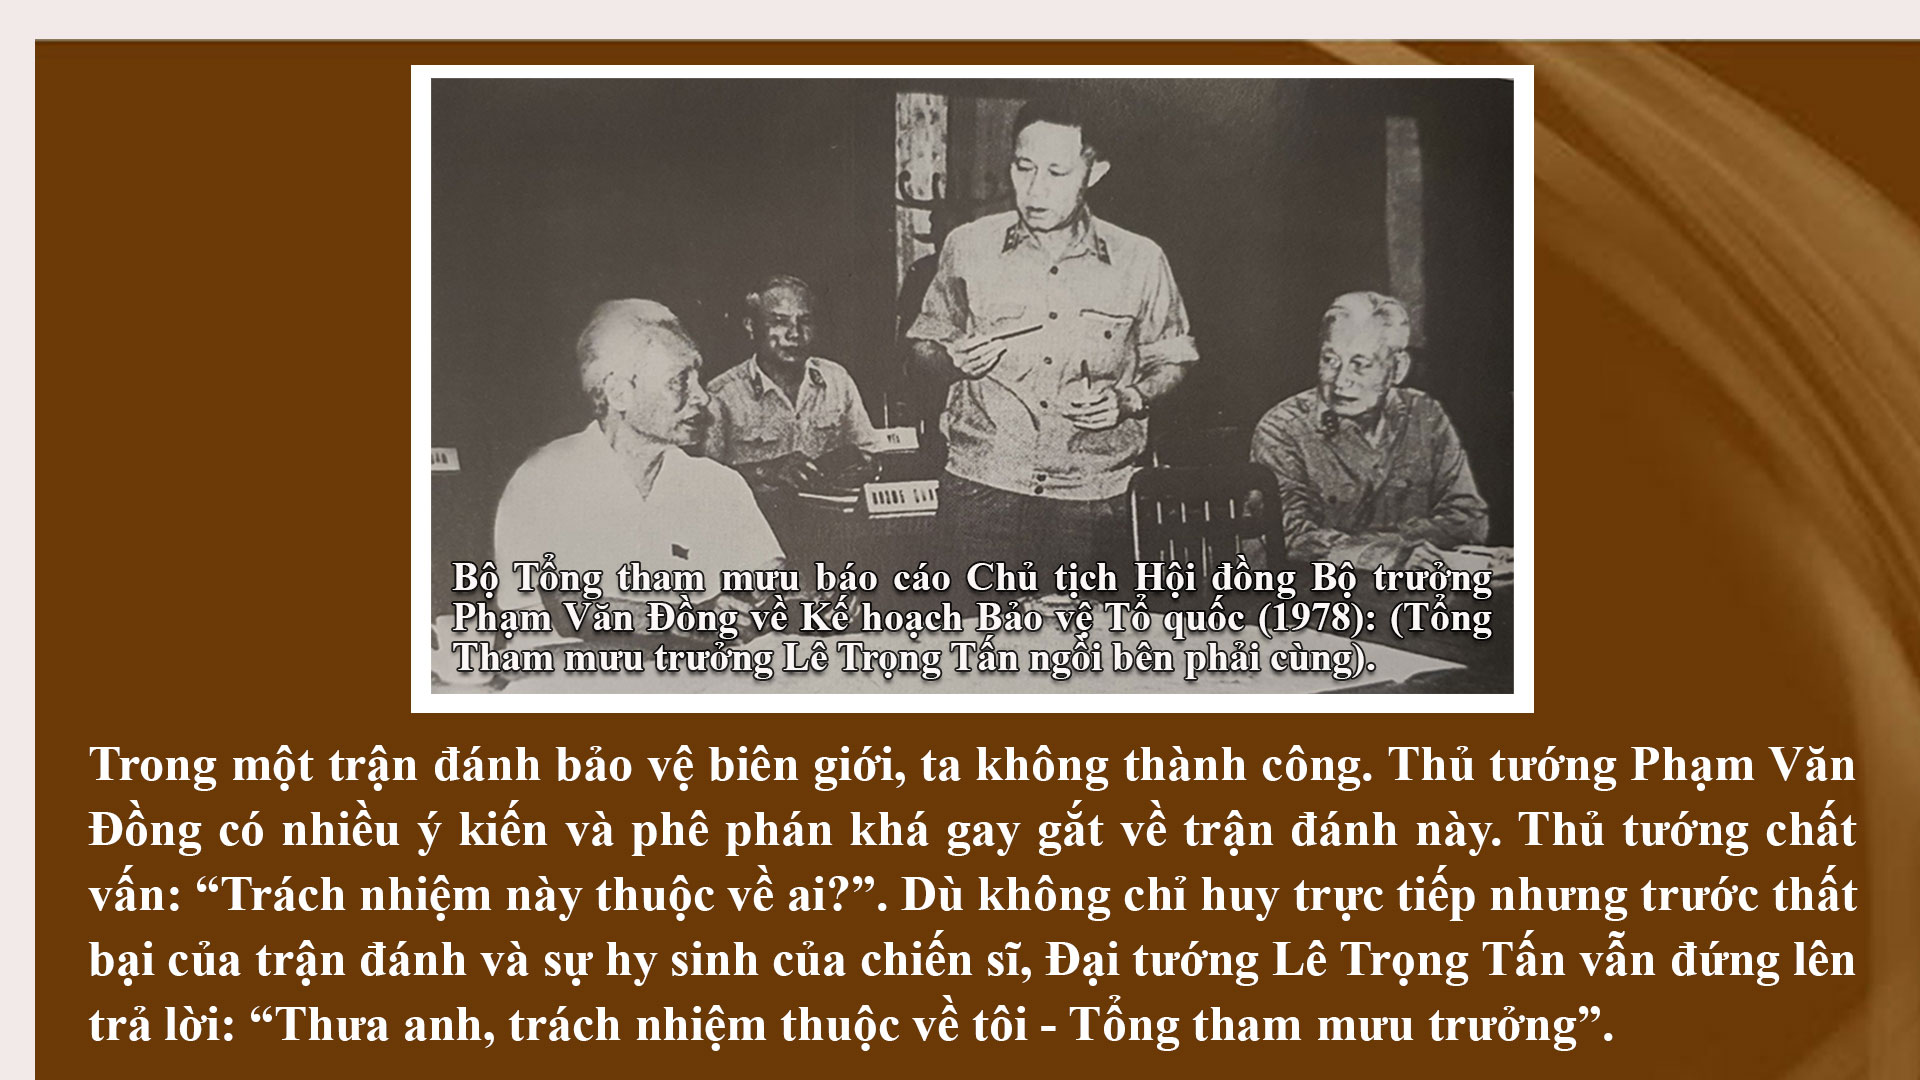 Đại tướng Lê Trọng Tấn- Zhukov của Việt Nam